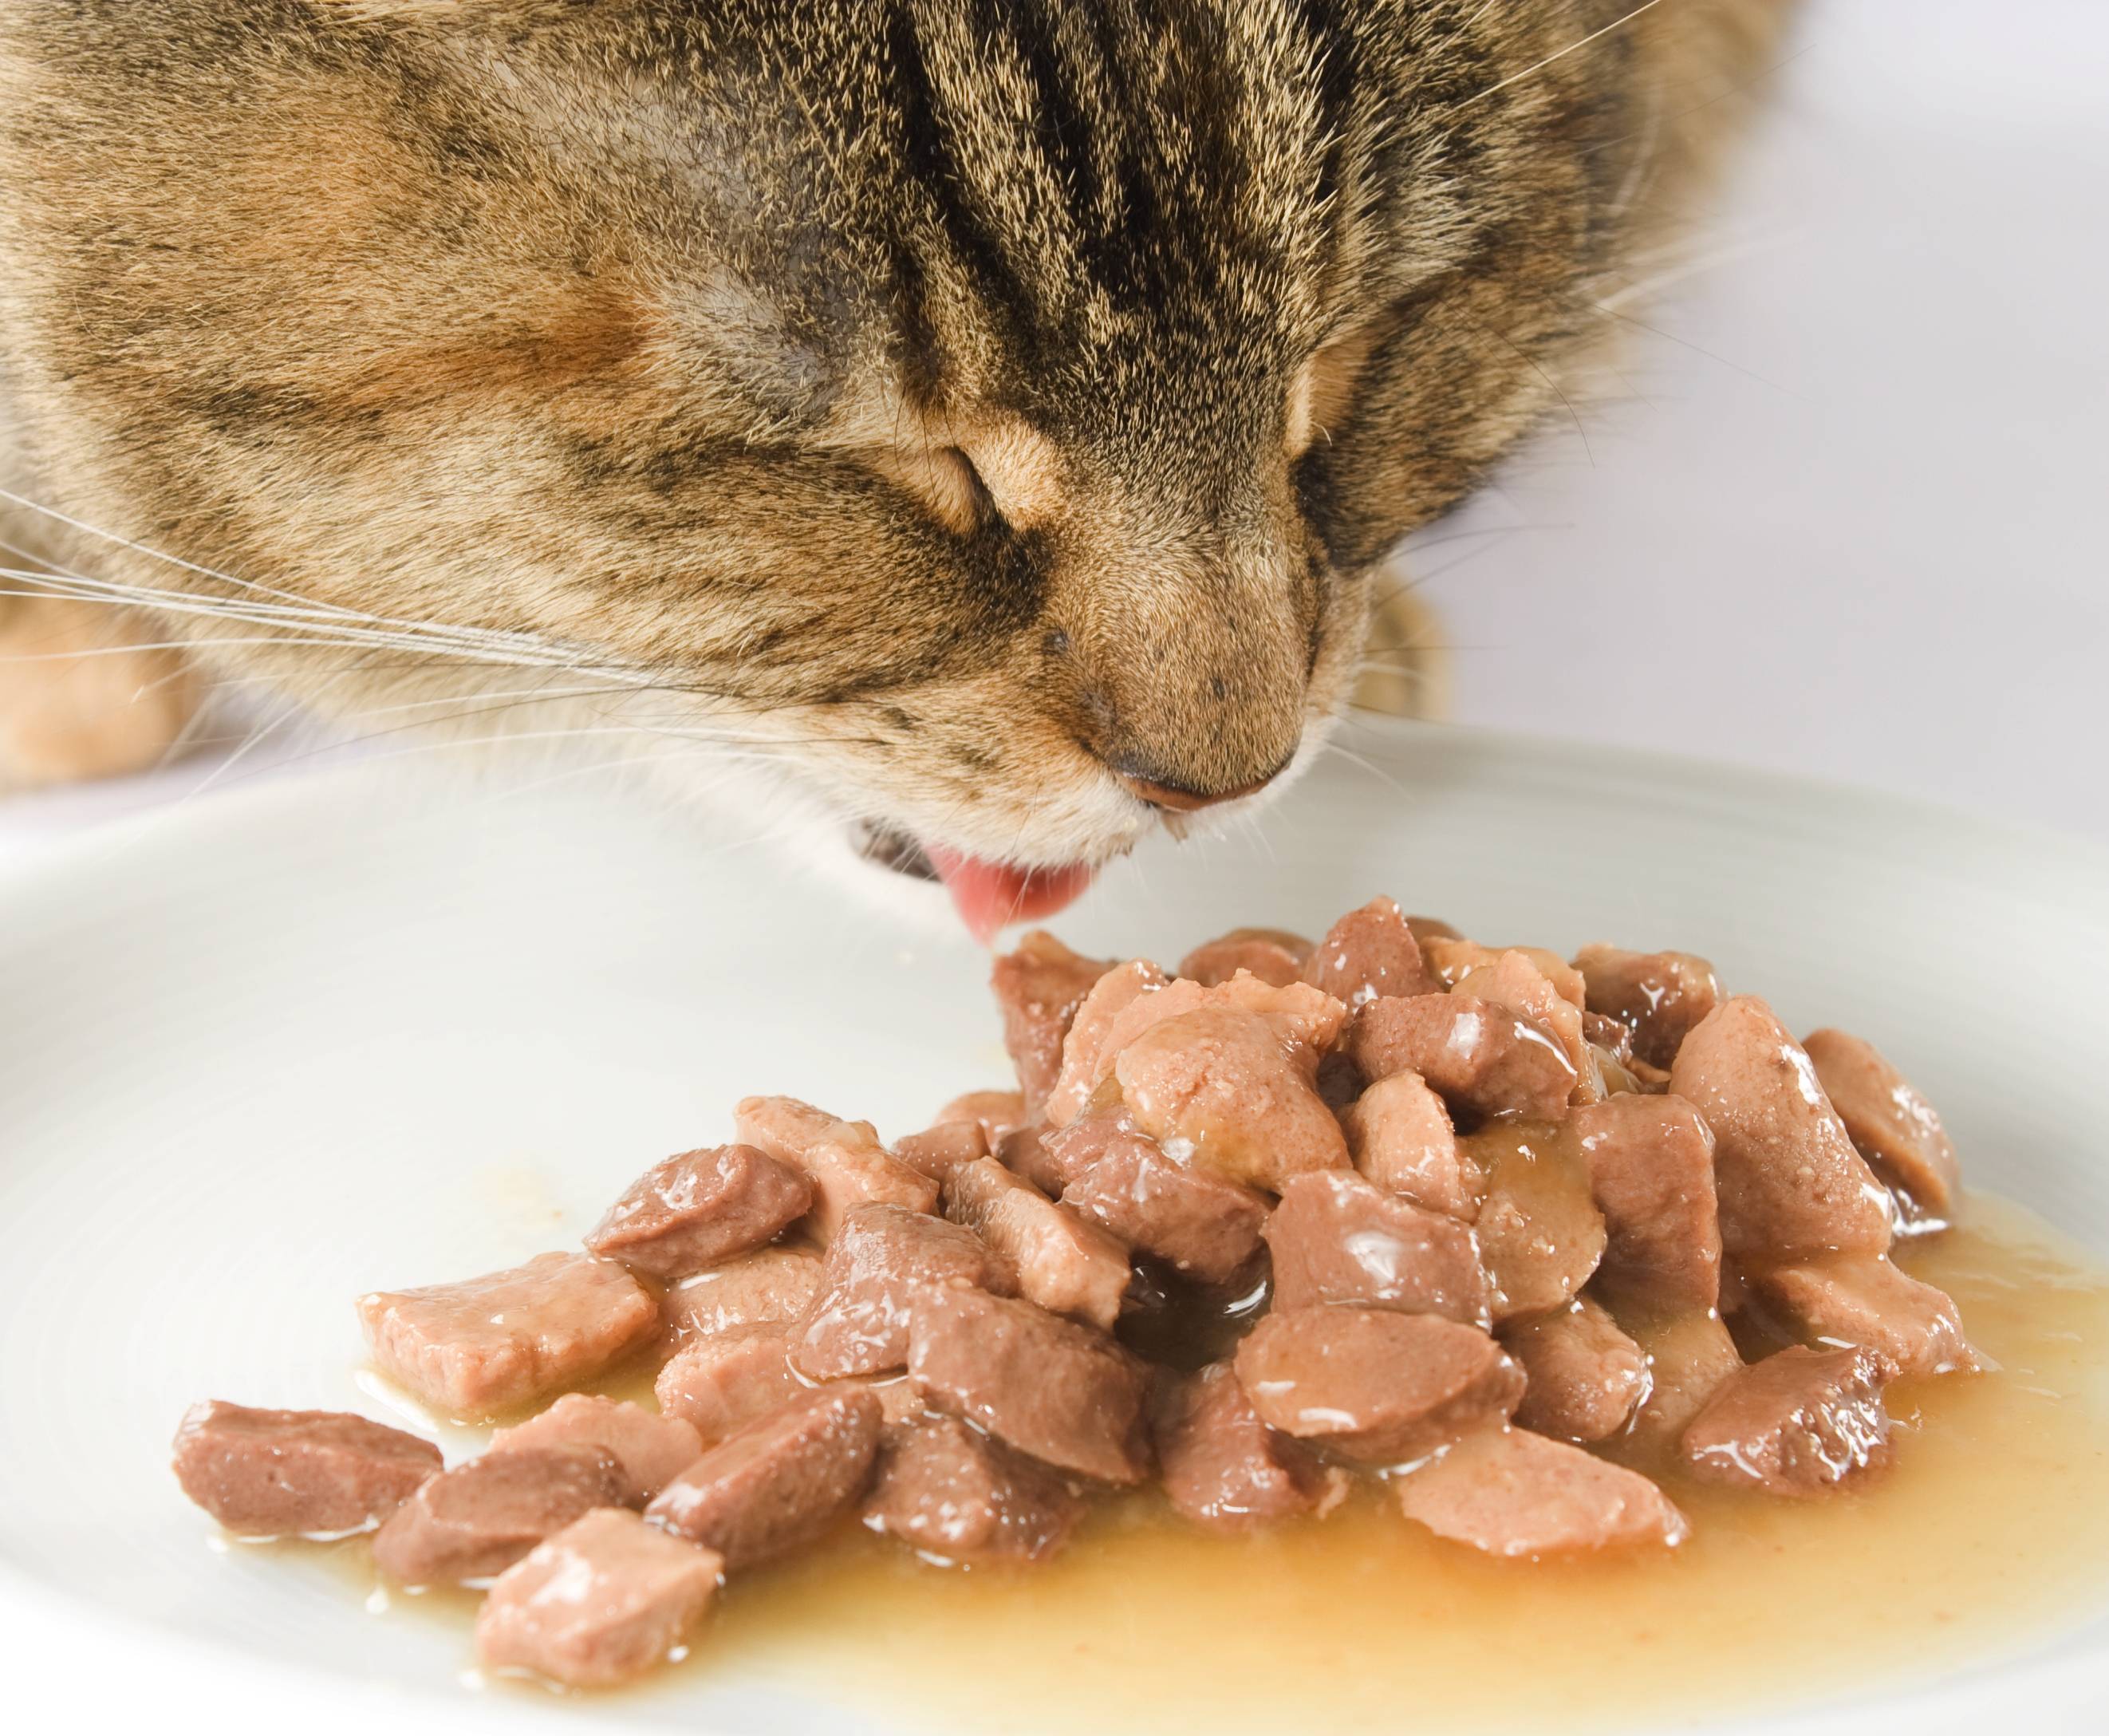 Кормление ослабленных и выздоравливающих кошек - статьи на ветеринарную тематику